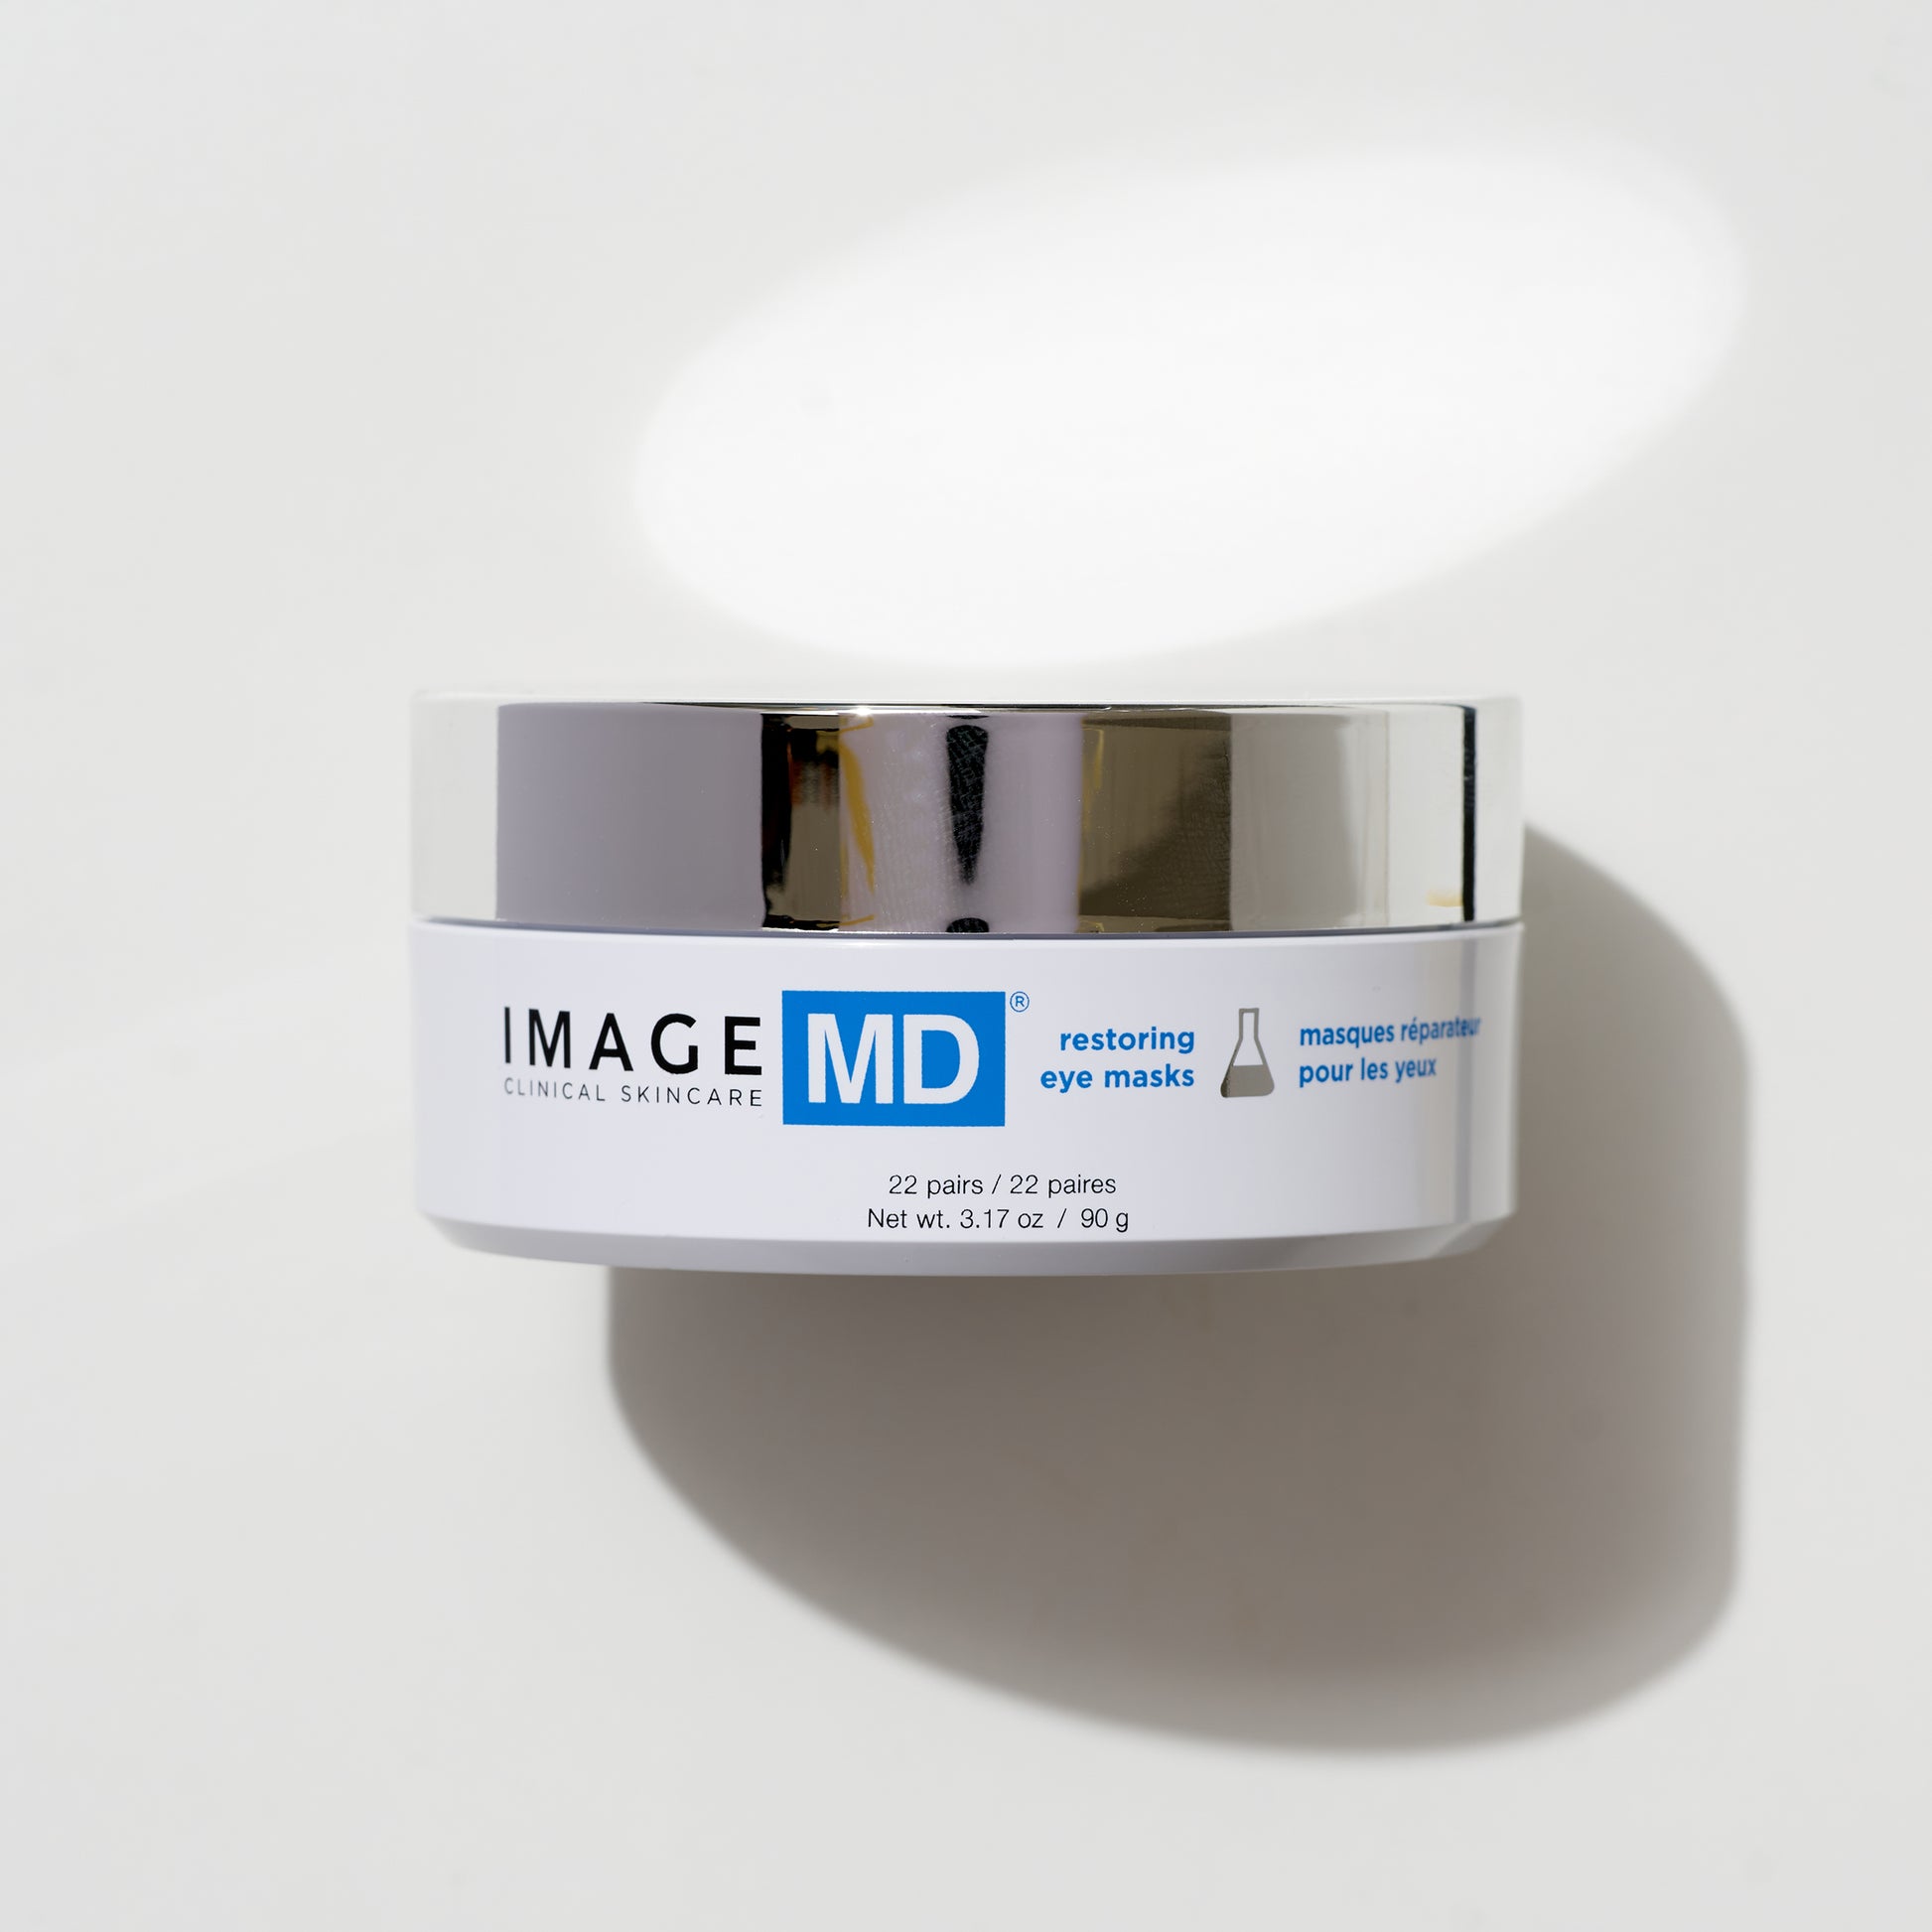 MD Restoring Eye Masks, Image Skincare